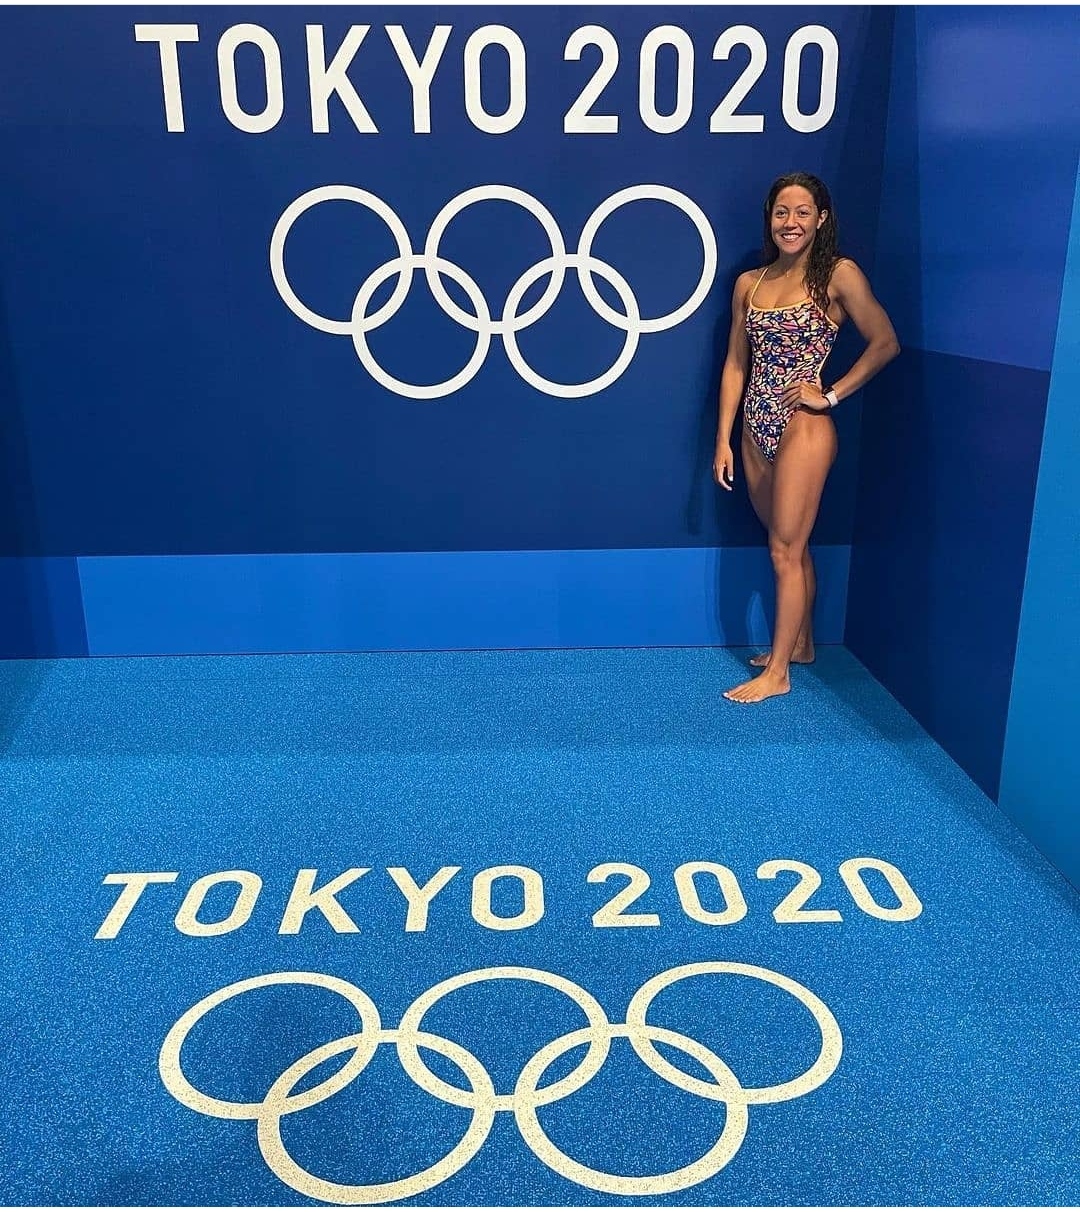 La Nadadora Olímpica Krystal Lara consigue una nueva marca